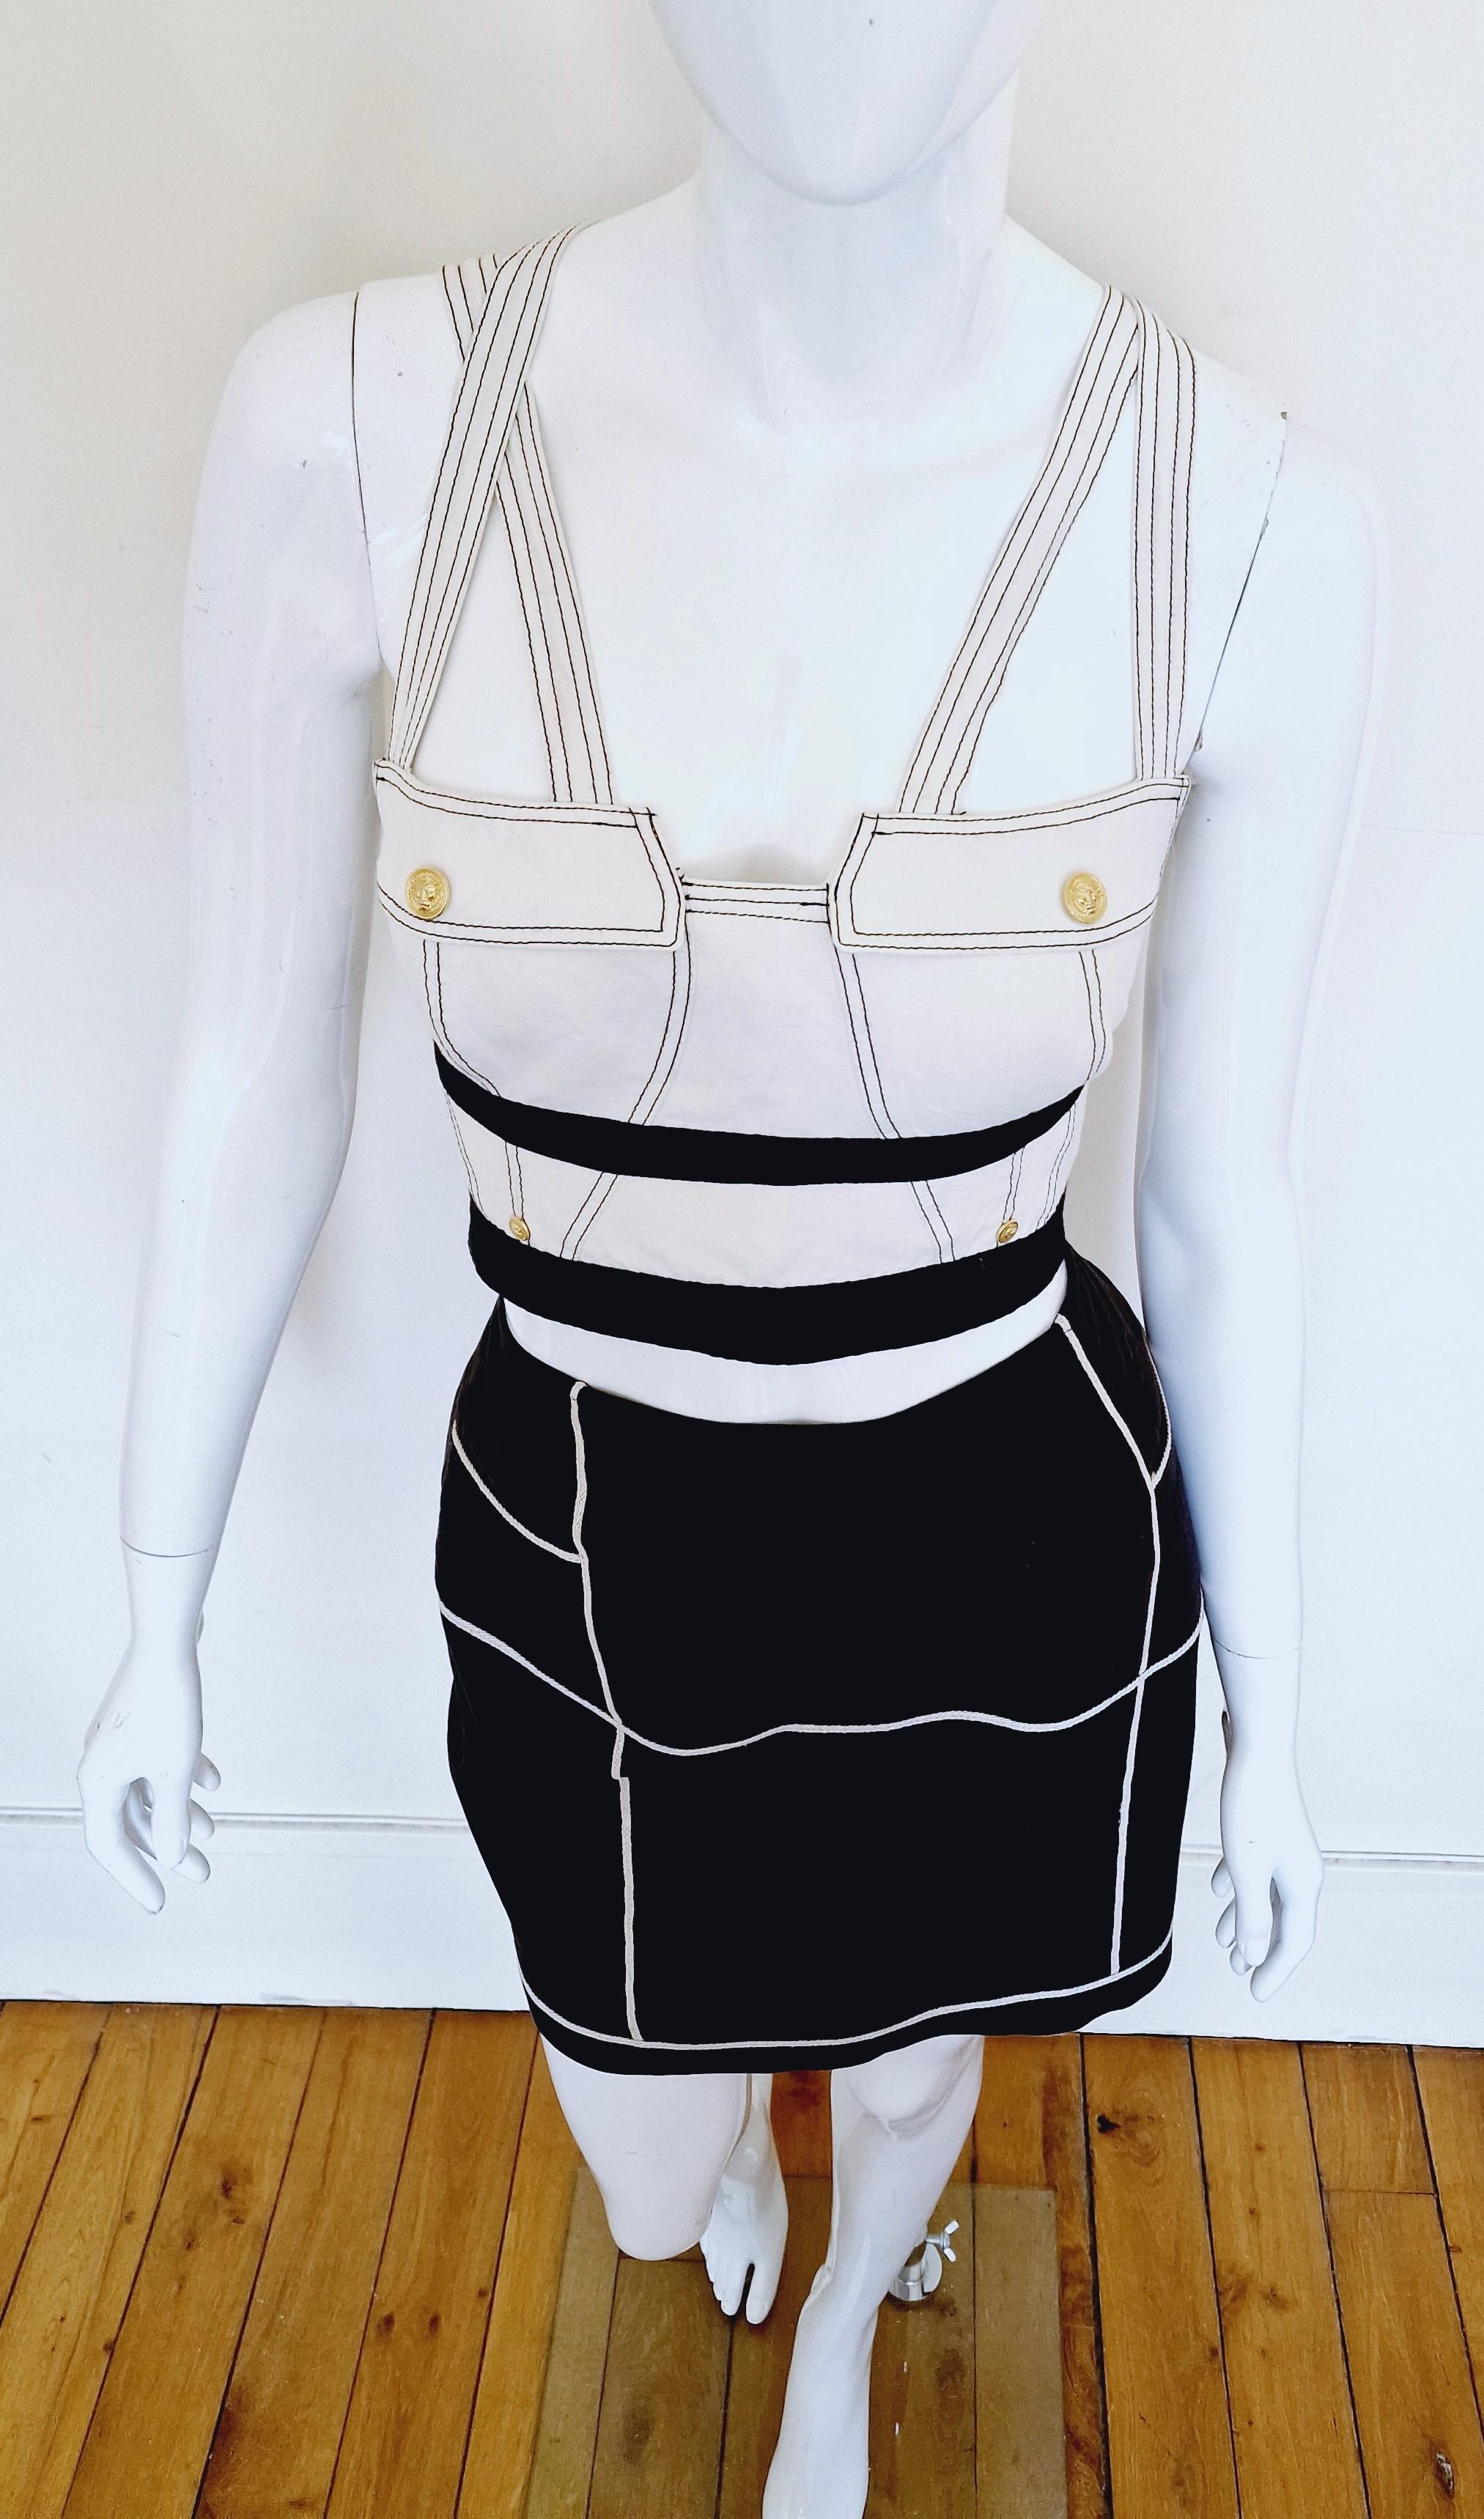 Gianni Versace Versus Straps S&M FW 1992 Bondage Vintage Ensemble Top Bra Dress For Sale 2